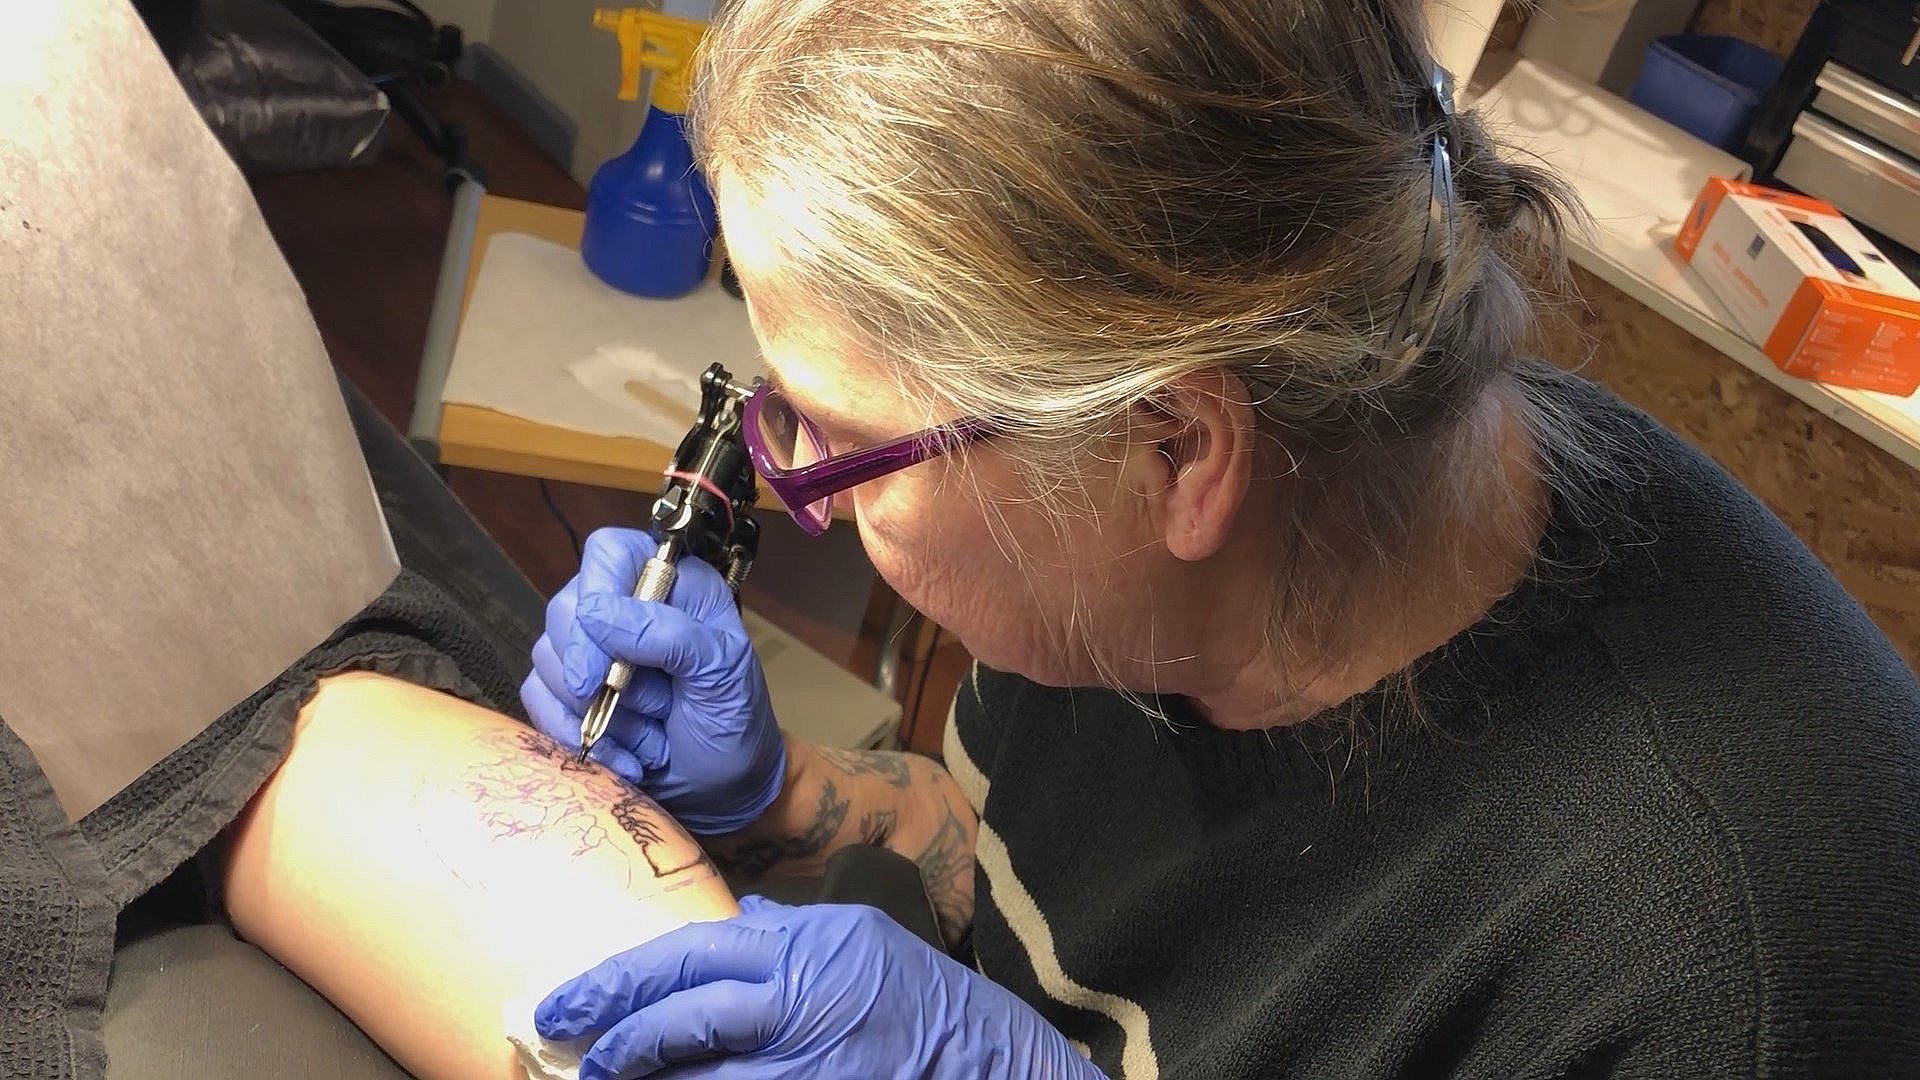 Bliv tusset gratis Danmarks første kvindelige tatovør | TV 2 Lorry